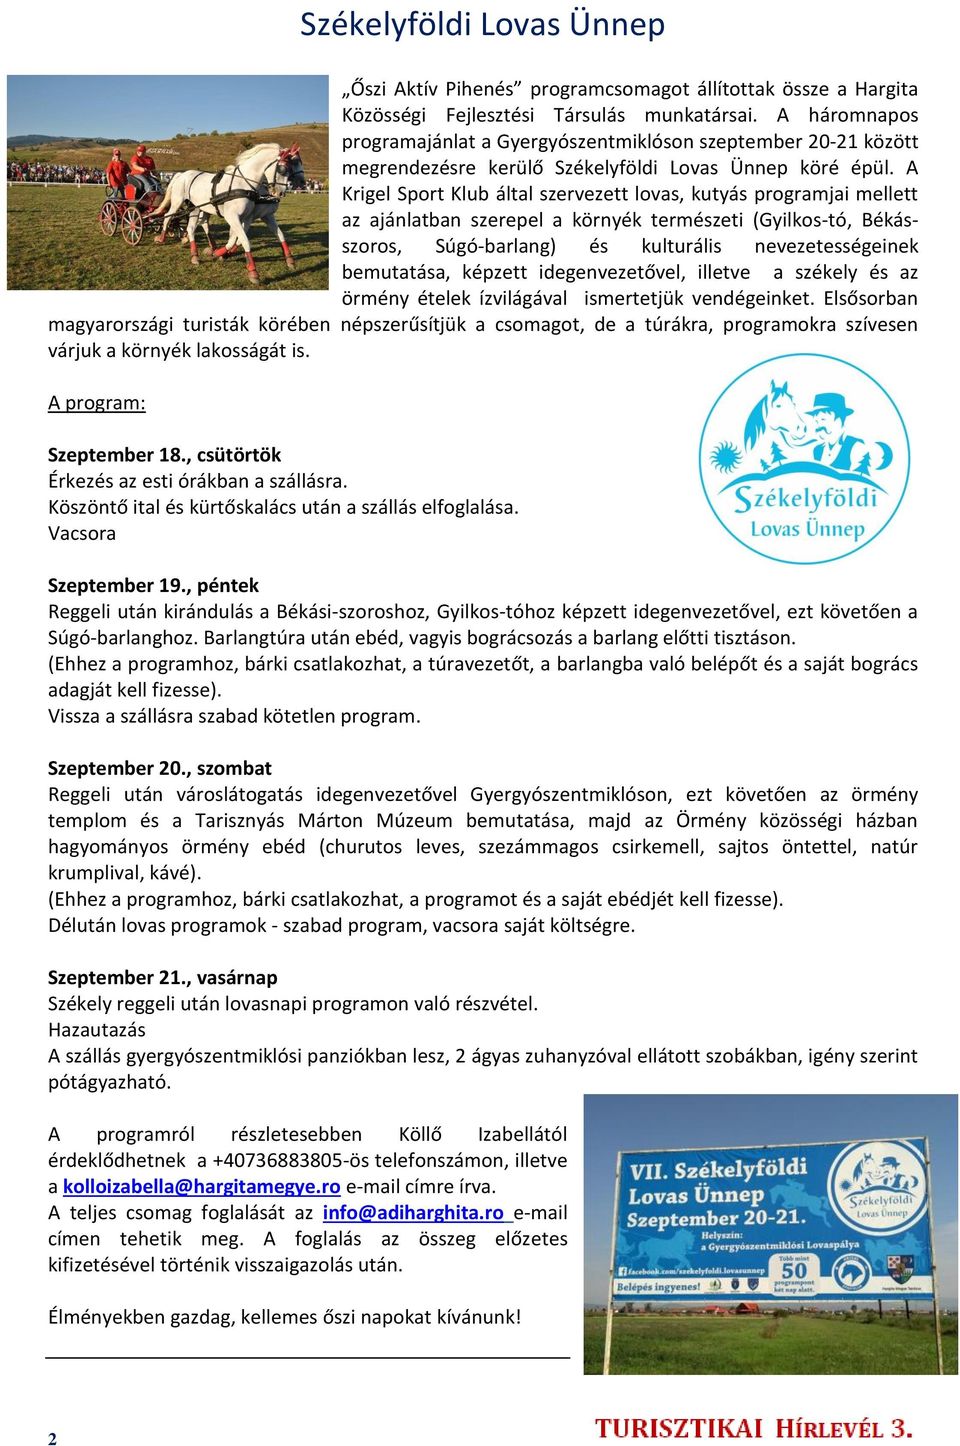 A Krigel Sport Klub által szervezett lovas, kutyás programjai mellett az ajánlatban szerepel a környék természeti (Gyilkos-tó, Békásszoros, Súgó-barlang) és kulturális nevezetességeinek bemutatása,